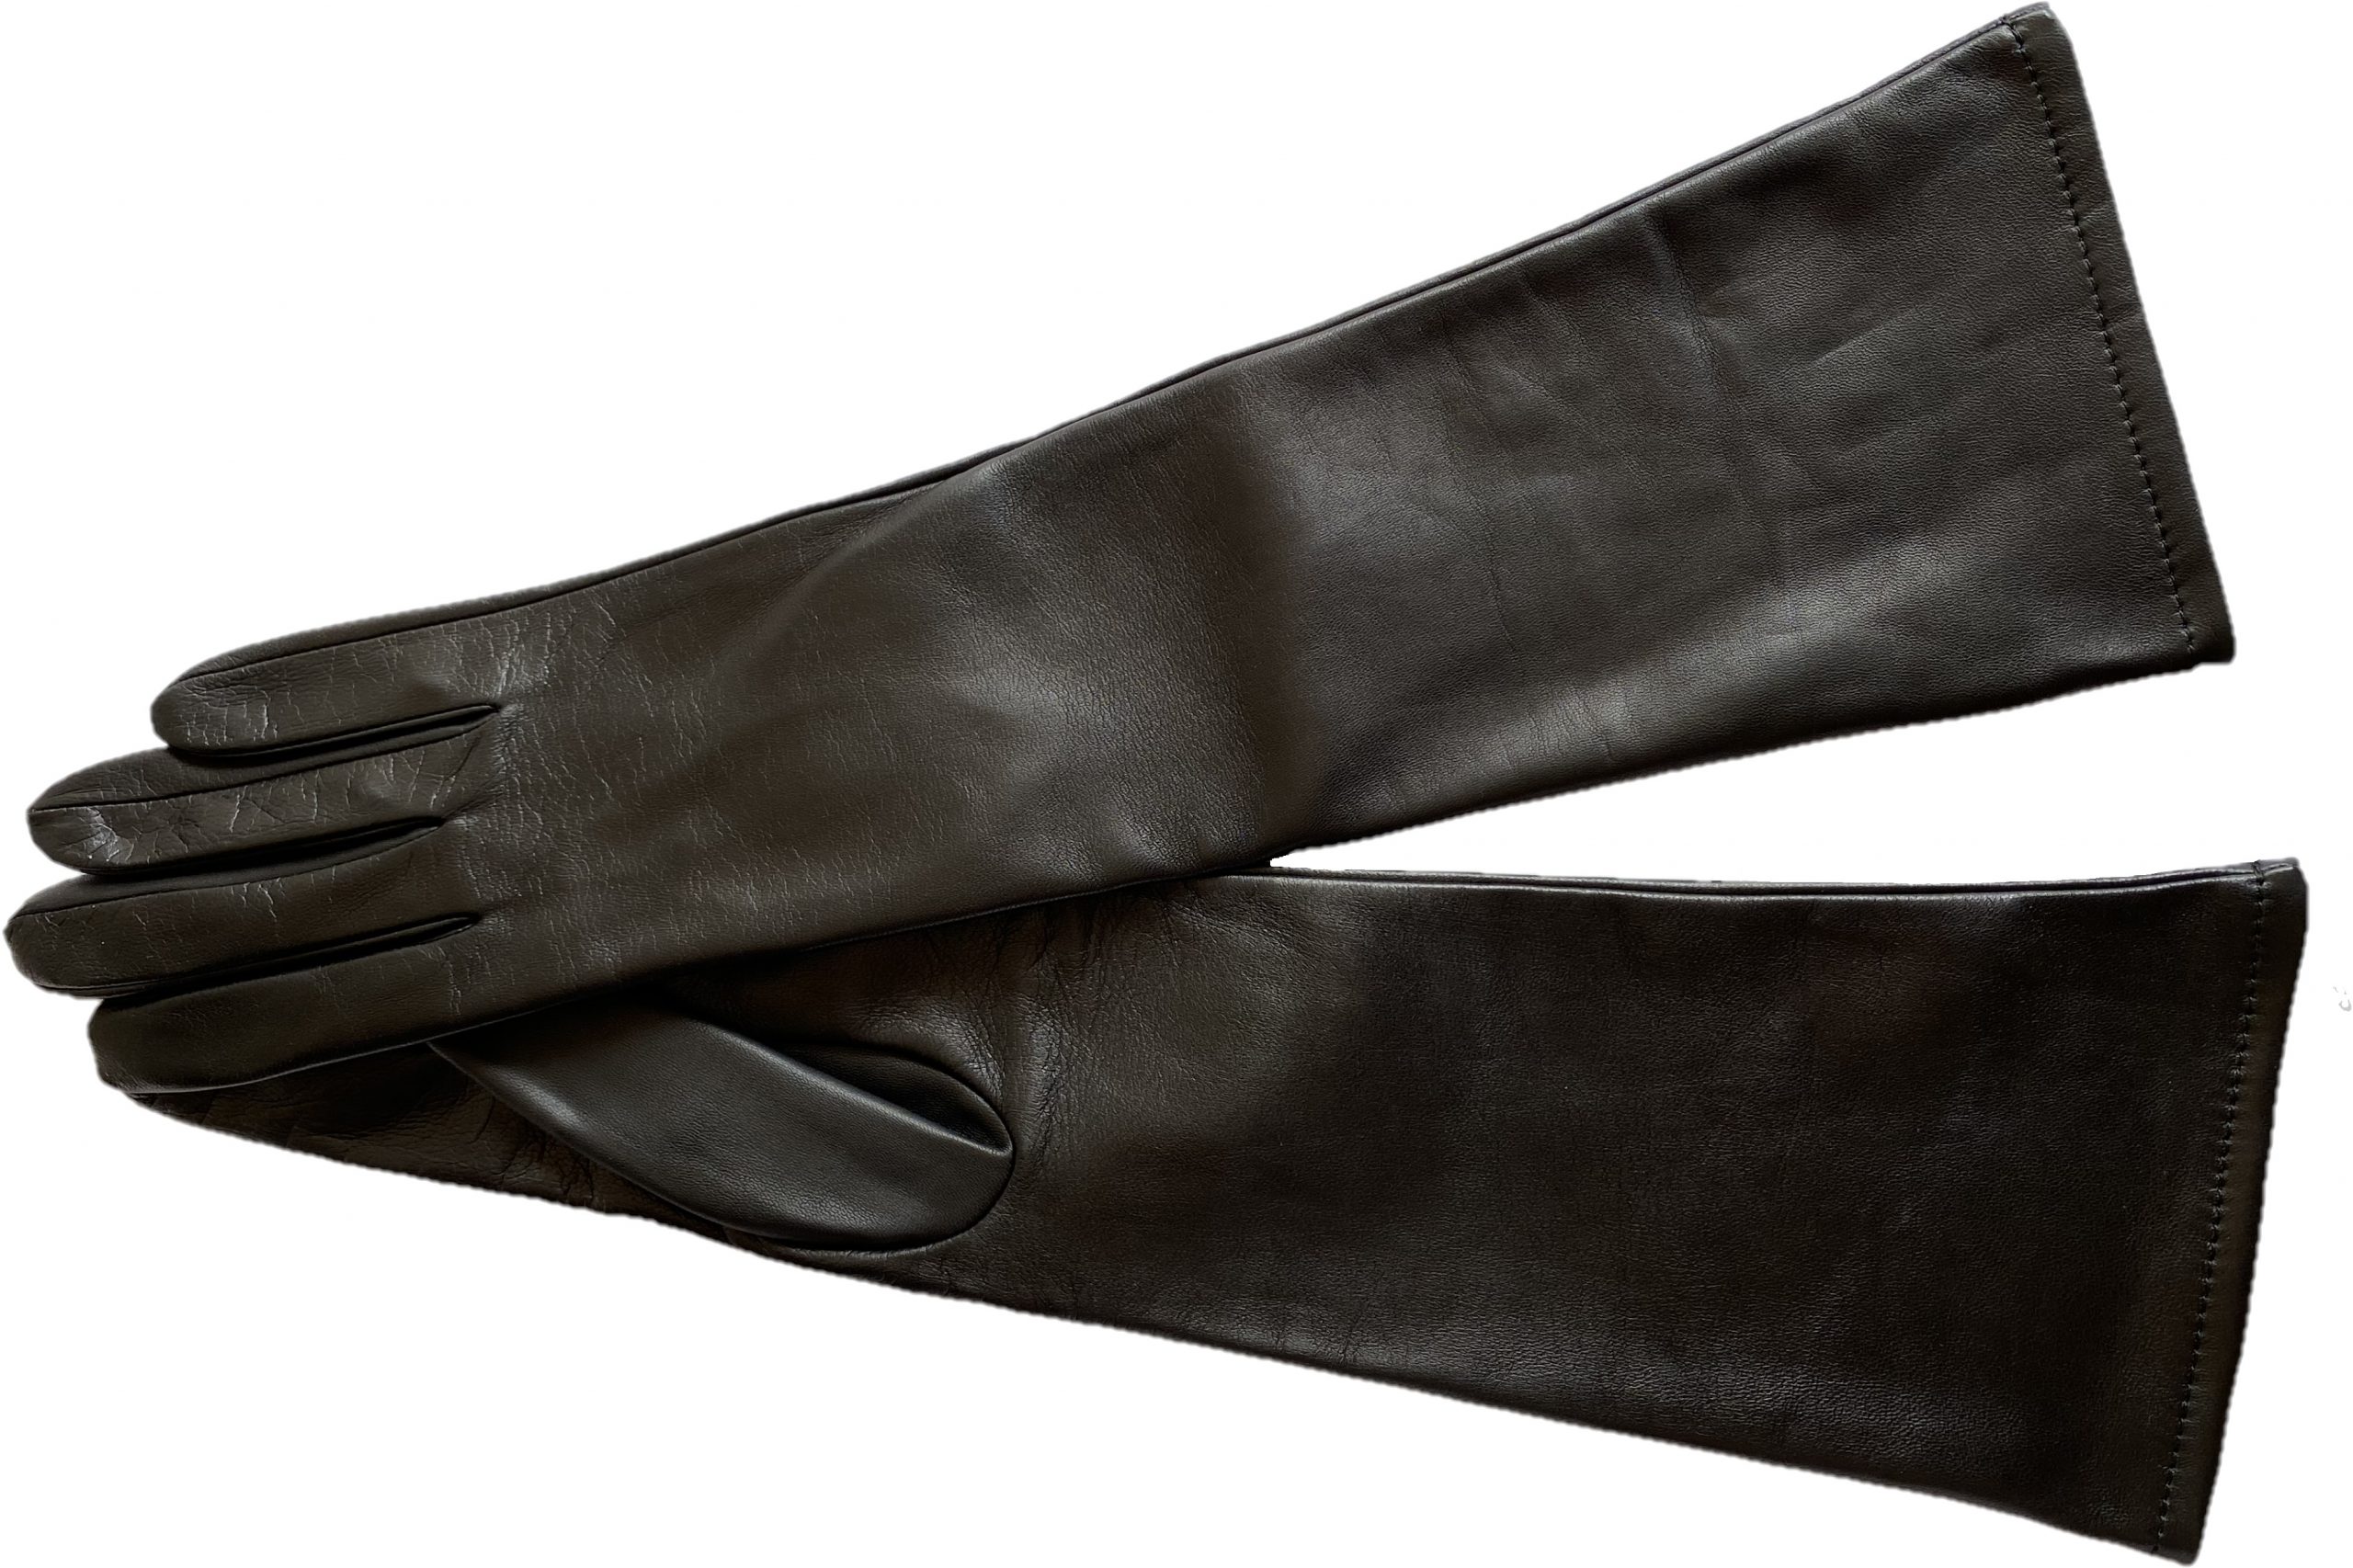 enthusiastic chain To interact Mănuși din piele pentru dame semilungi necaptusite negru - Mănuși din piele  produse în RomâniaMănuși din piele produse în România